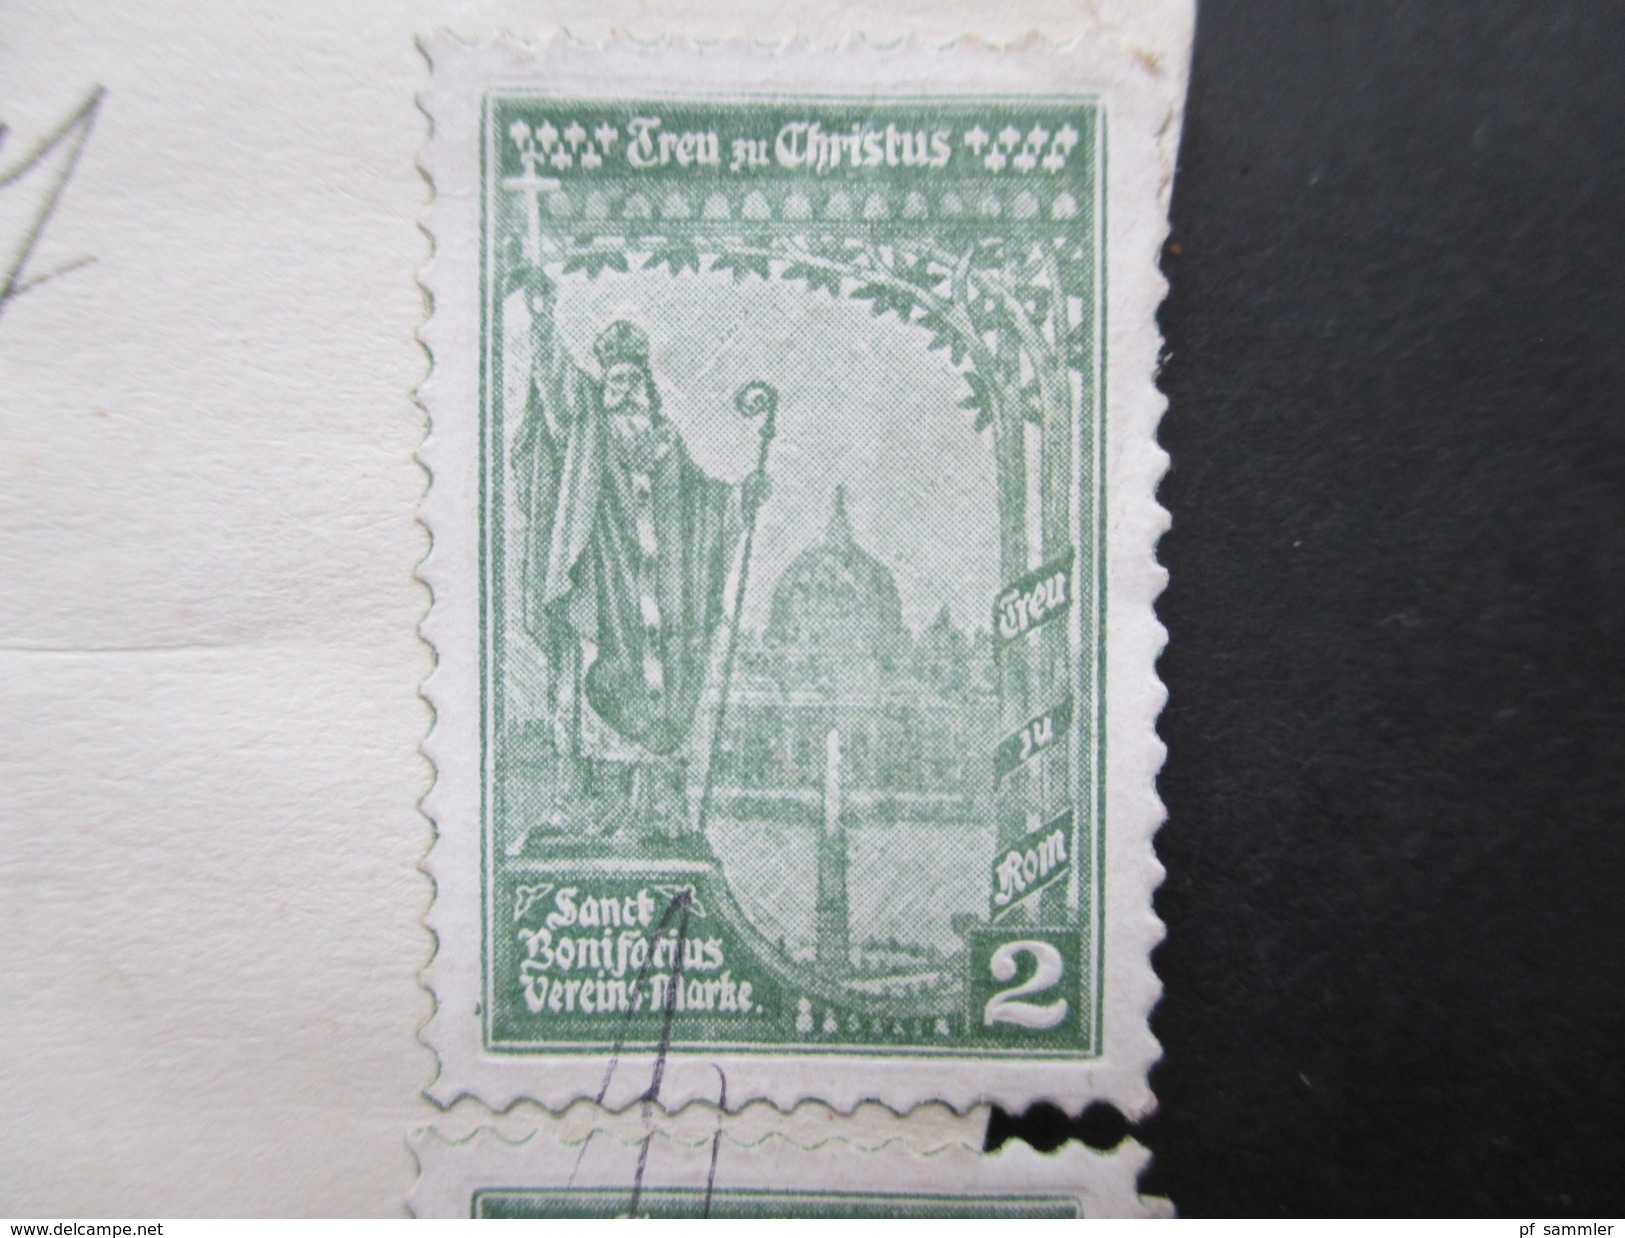 CSSR / Prag 1927 Briefstück Mit 4 Vignetten Treu Zu Christus Sanct Bonifatius Vereins Marke + 6er Streifen Marken! - Cristianismo